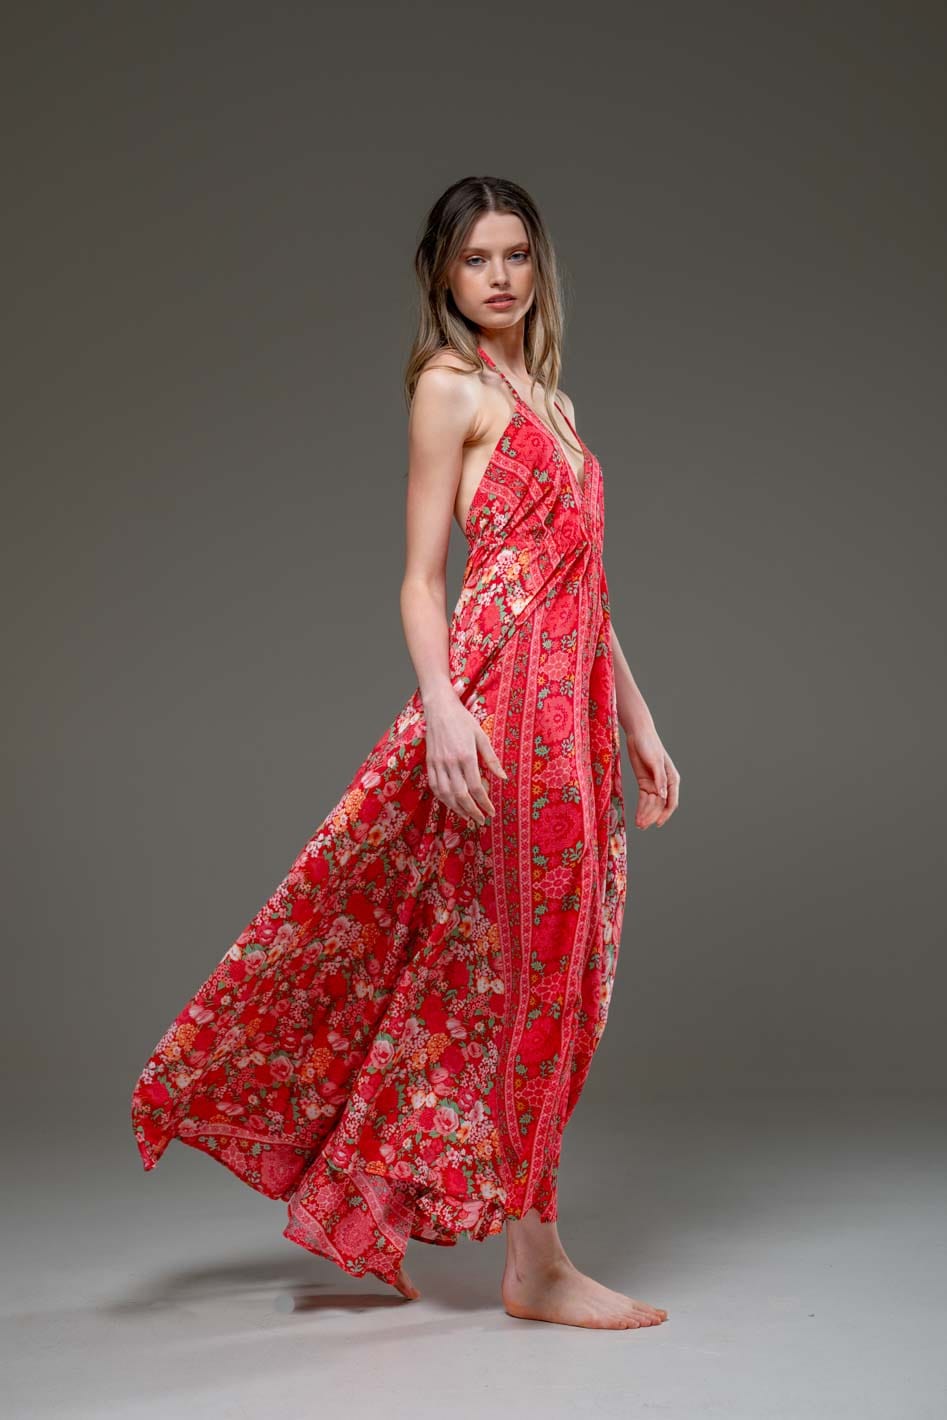 Super soft Rayon V Neckline Red Flower print Low Back Long Strap Dress